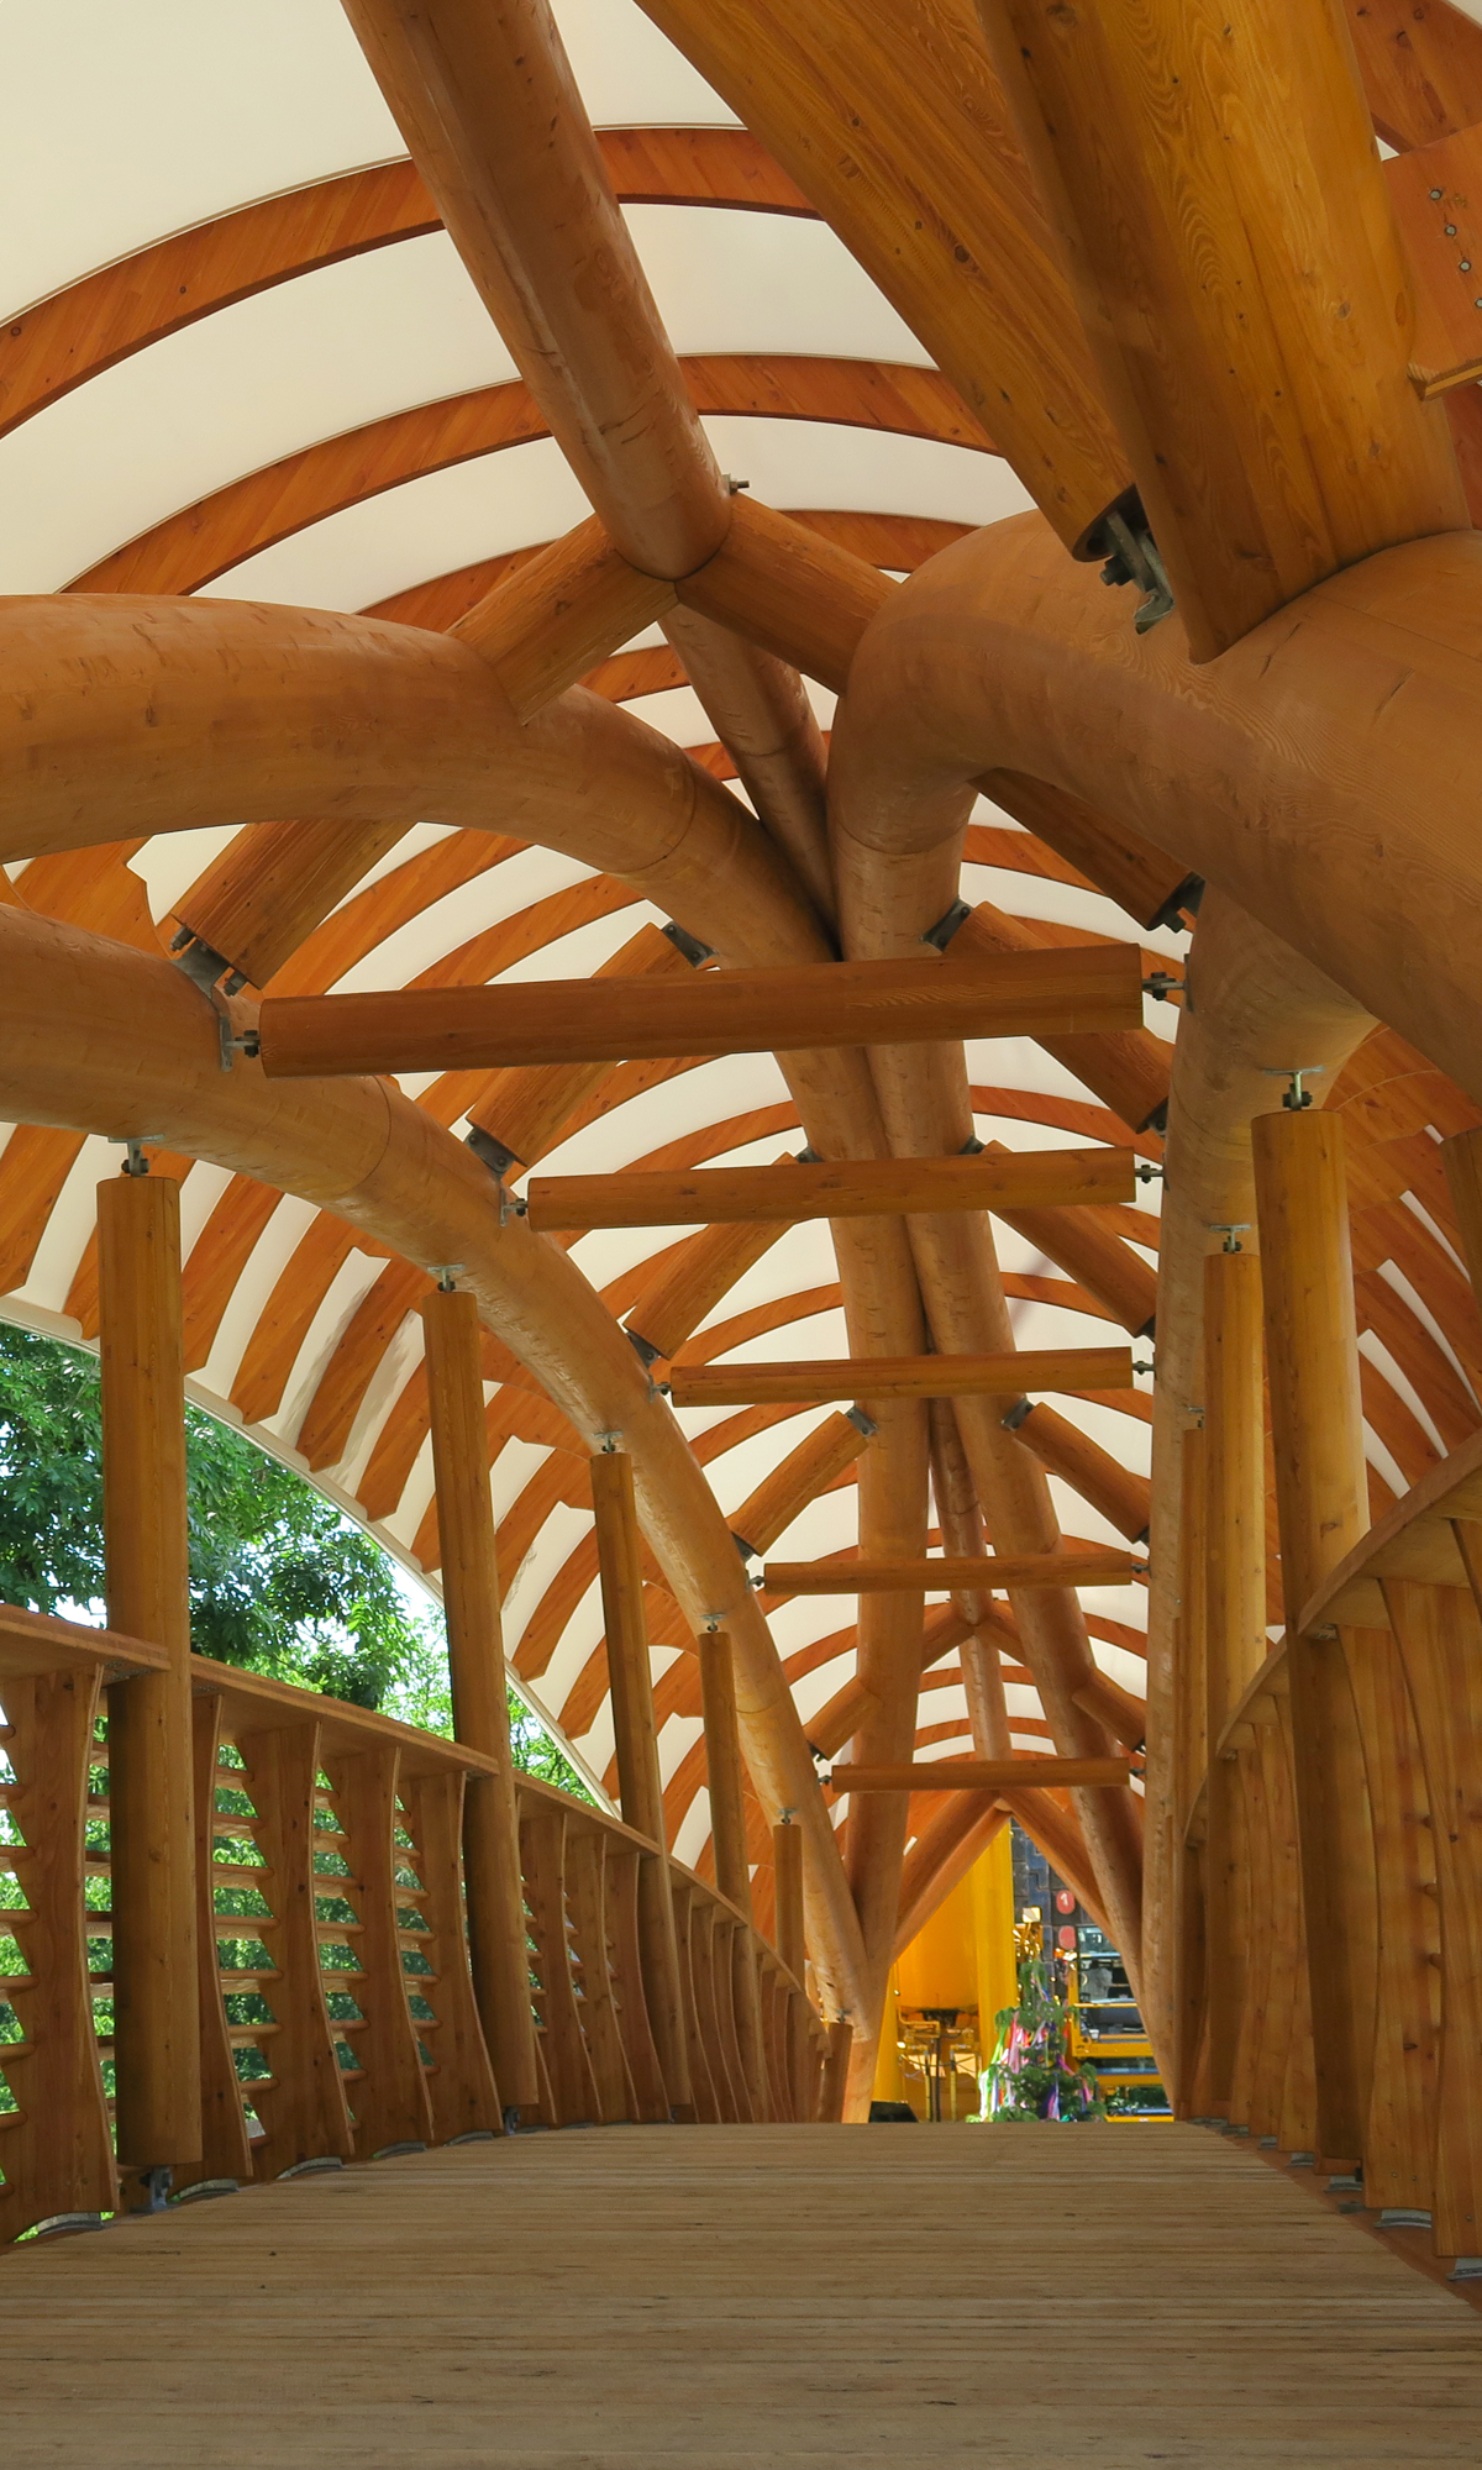 Die Holzkunstbrücke Aubrugg ist von innen zu sehen. Geschwungene massive Holzstrukturen und ein hohes Holzgeländer sind zu erkennen.